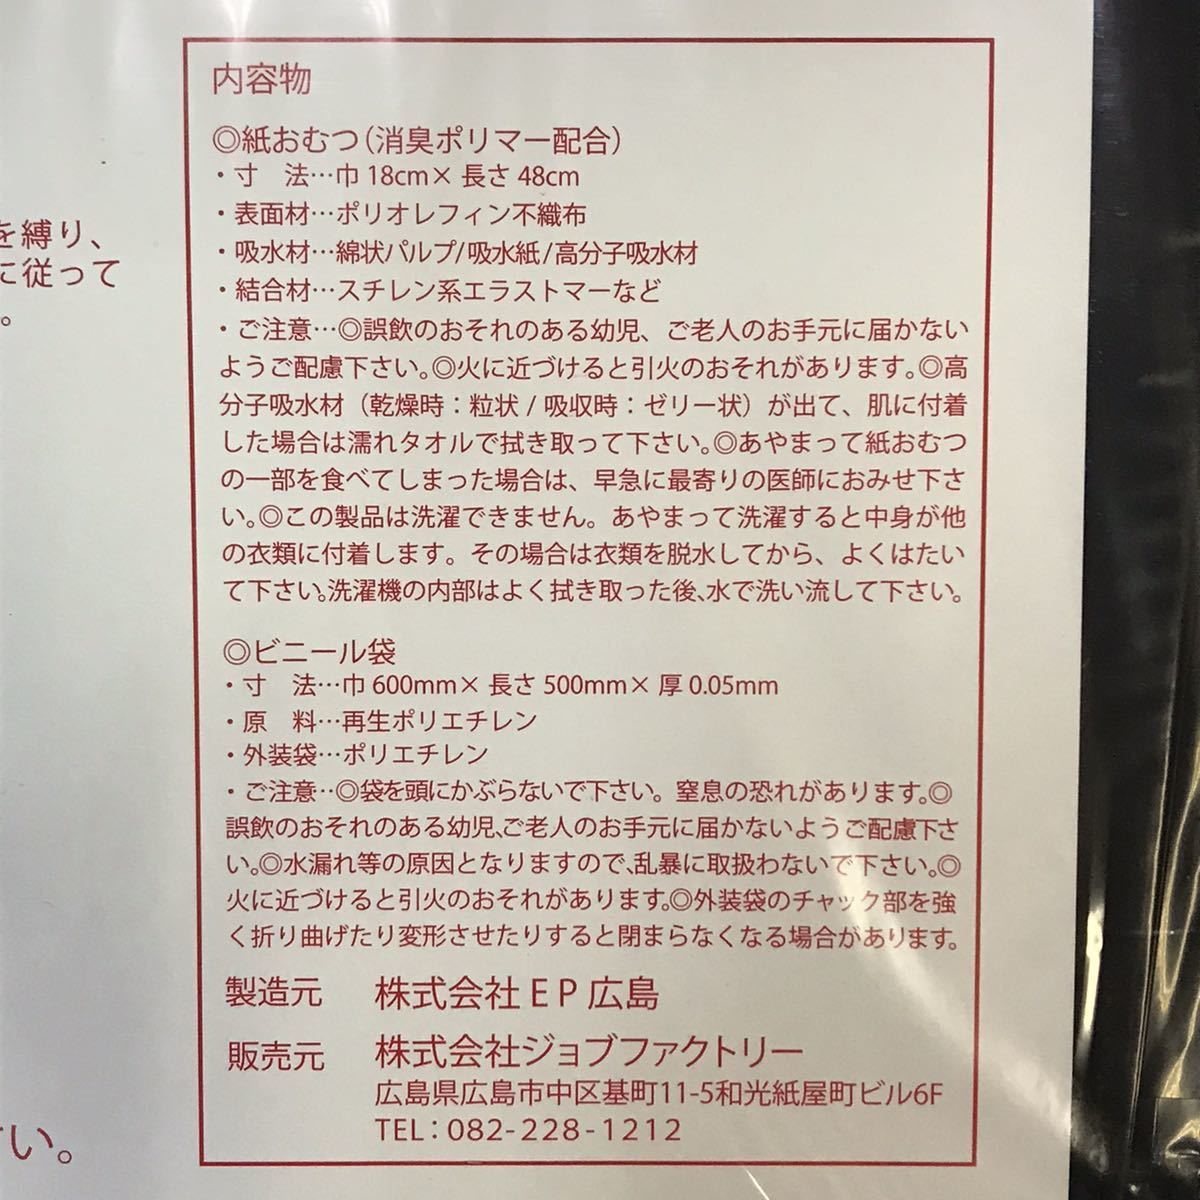  бесплатная доставка Hiroshima Toyo Carp предотвращение бедствий коробка для простой туалет предотвращение бедствий комплект .. пакет есть / картон сборка тип простой туалет / для экстренных случаев туалет ржавчина простой туалет 